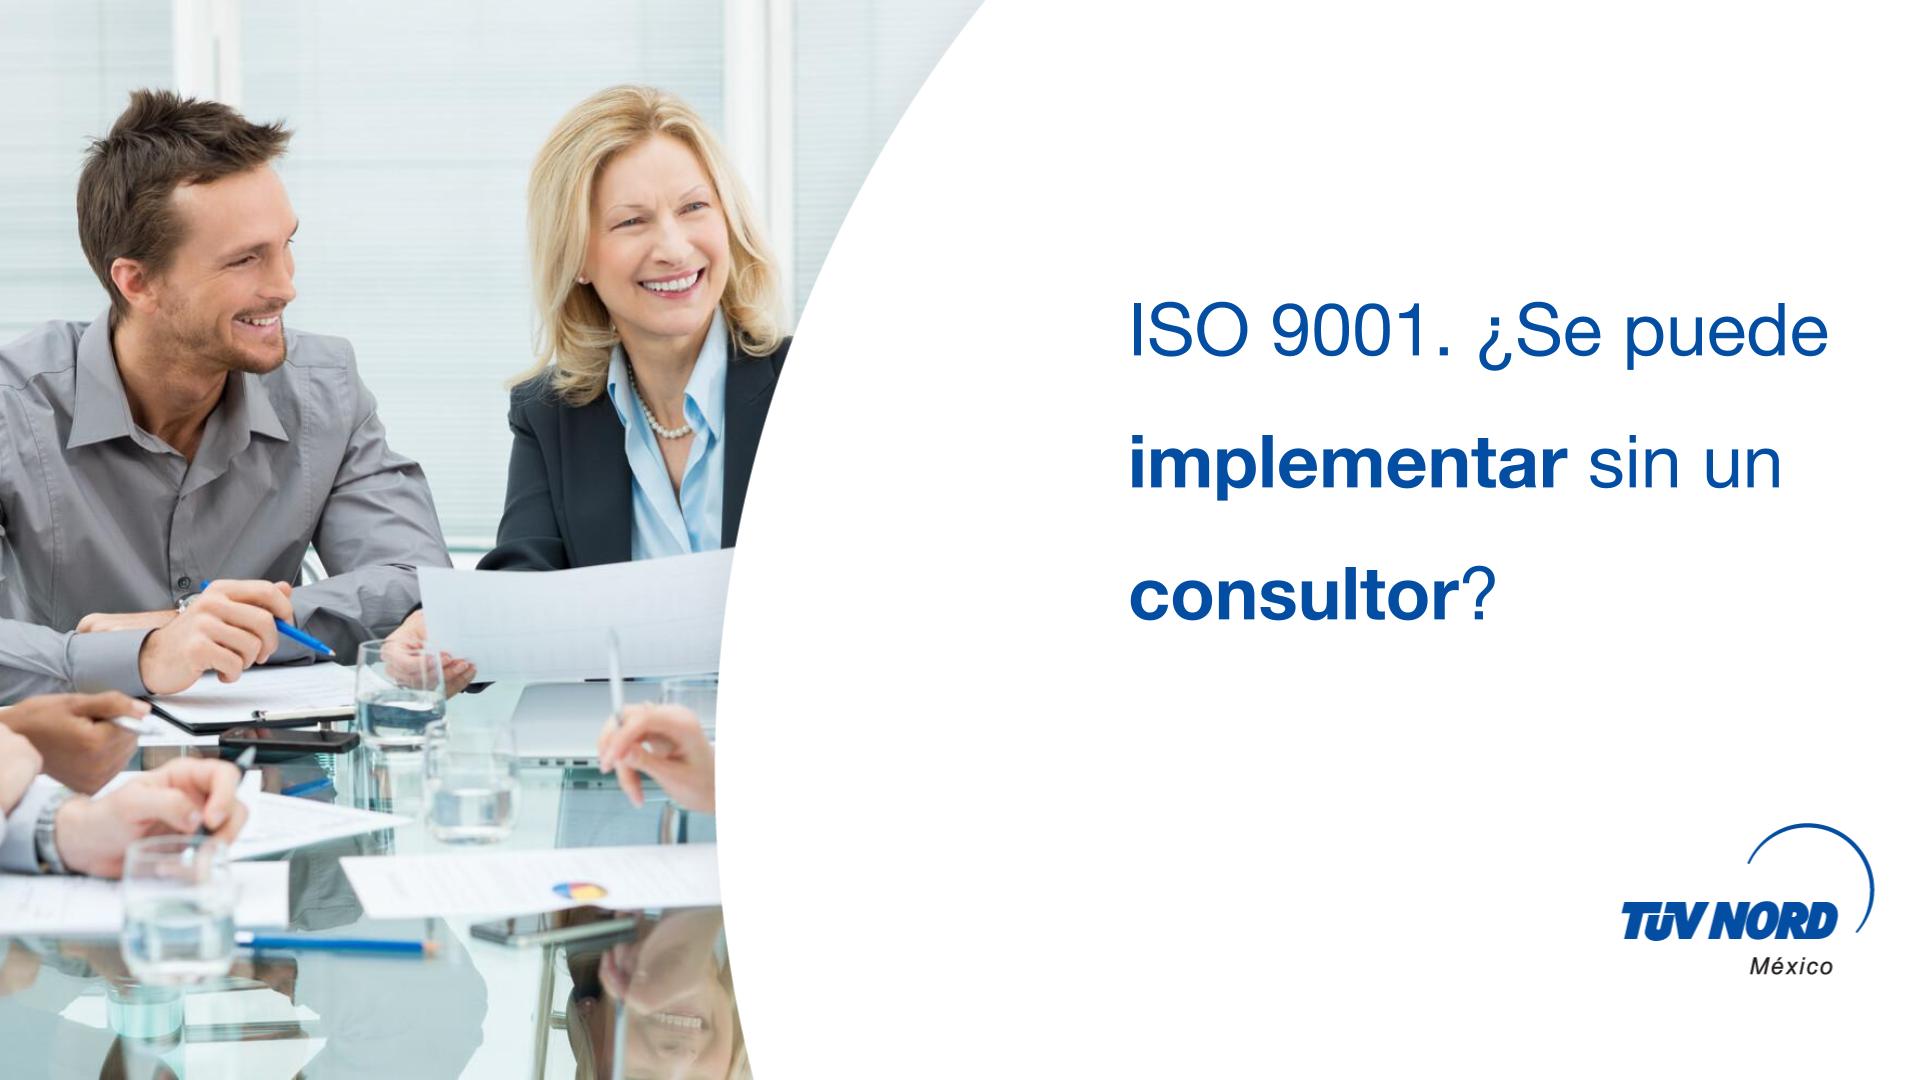 ISO 9001. ¿Se puede implementar sin un consultor?